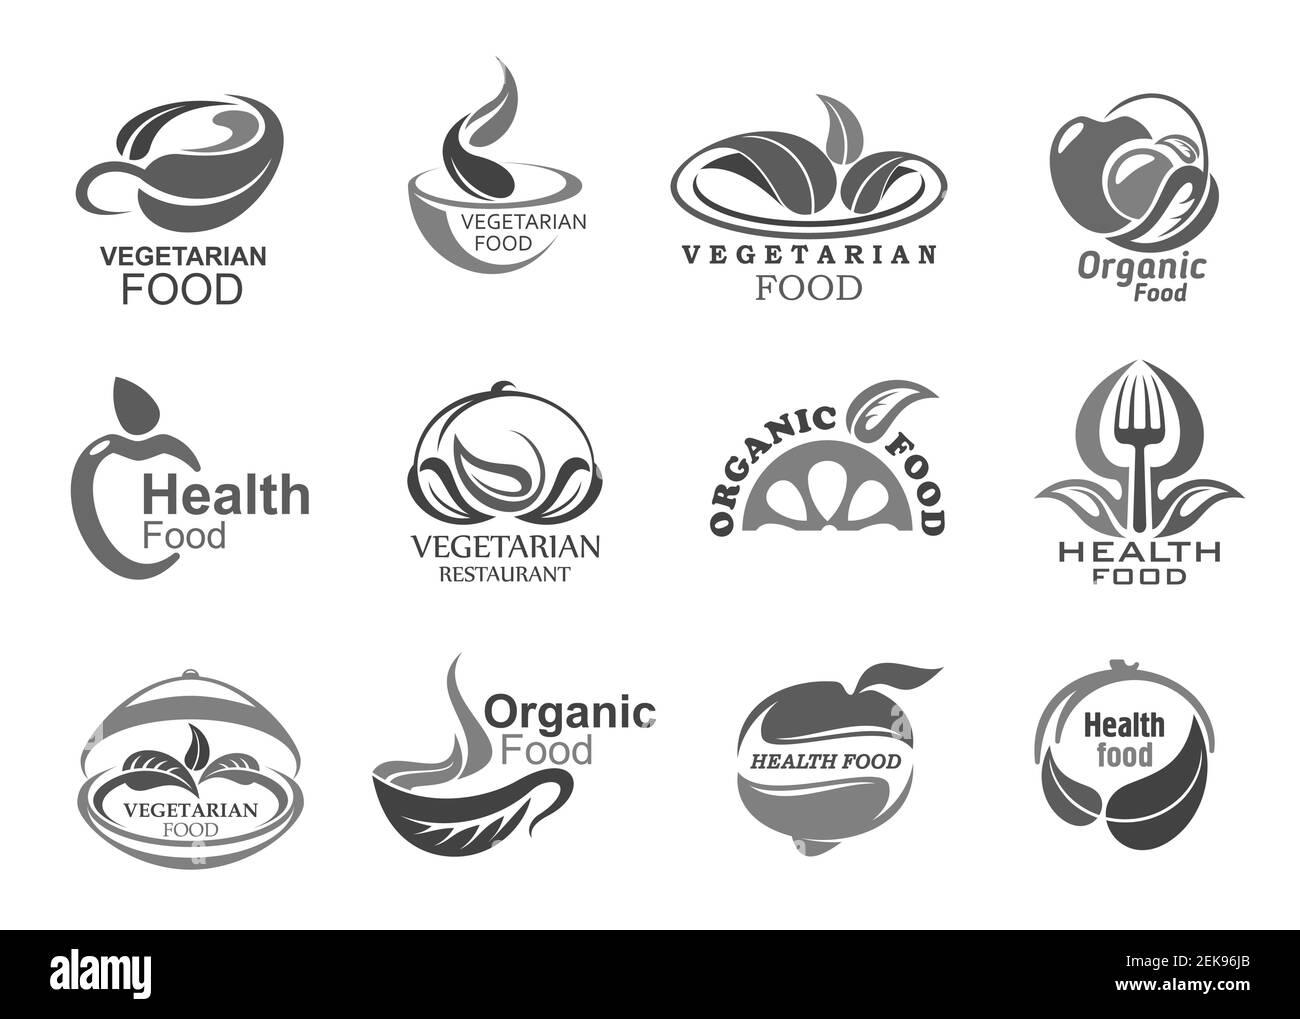 Vegetarische Lebensmittel Vektor-Symbole für gesunde, organische und vegane Mahlzeit. Frisches Obst, Gemüse und Getreide auf Restaurant Serviertablett mit Teller, für Stock Vektor